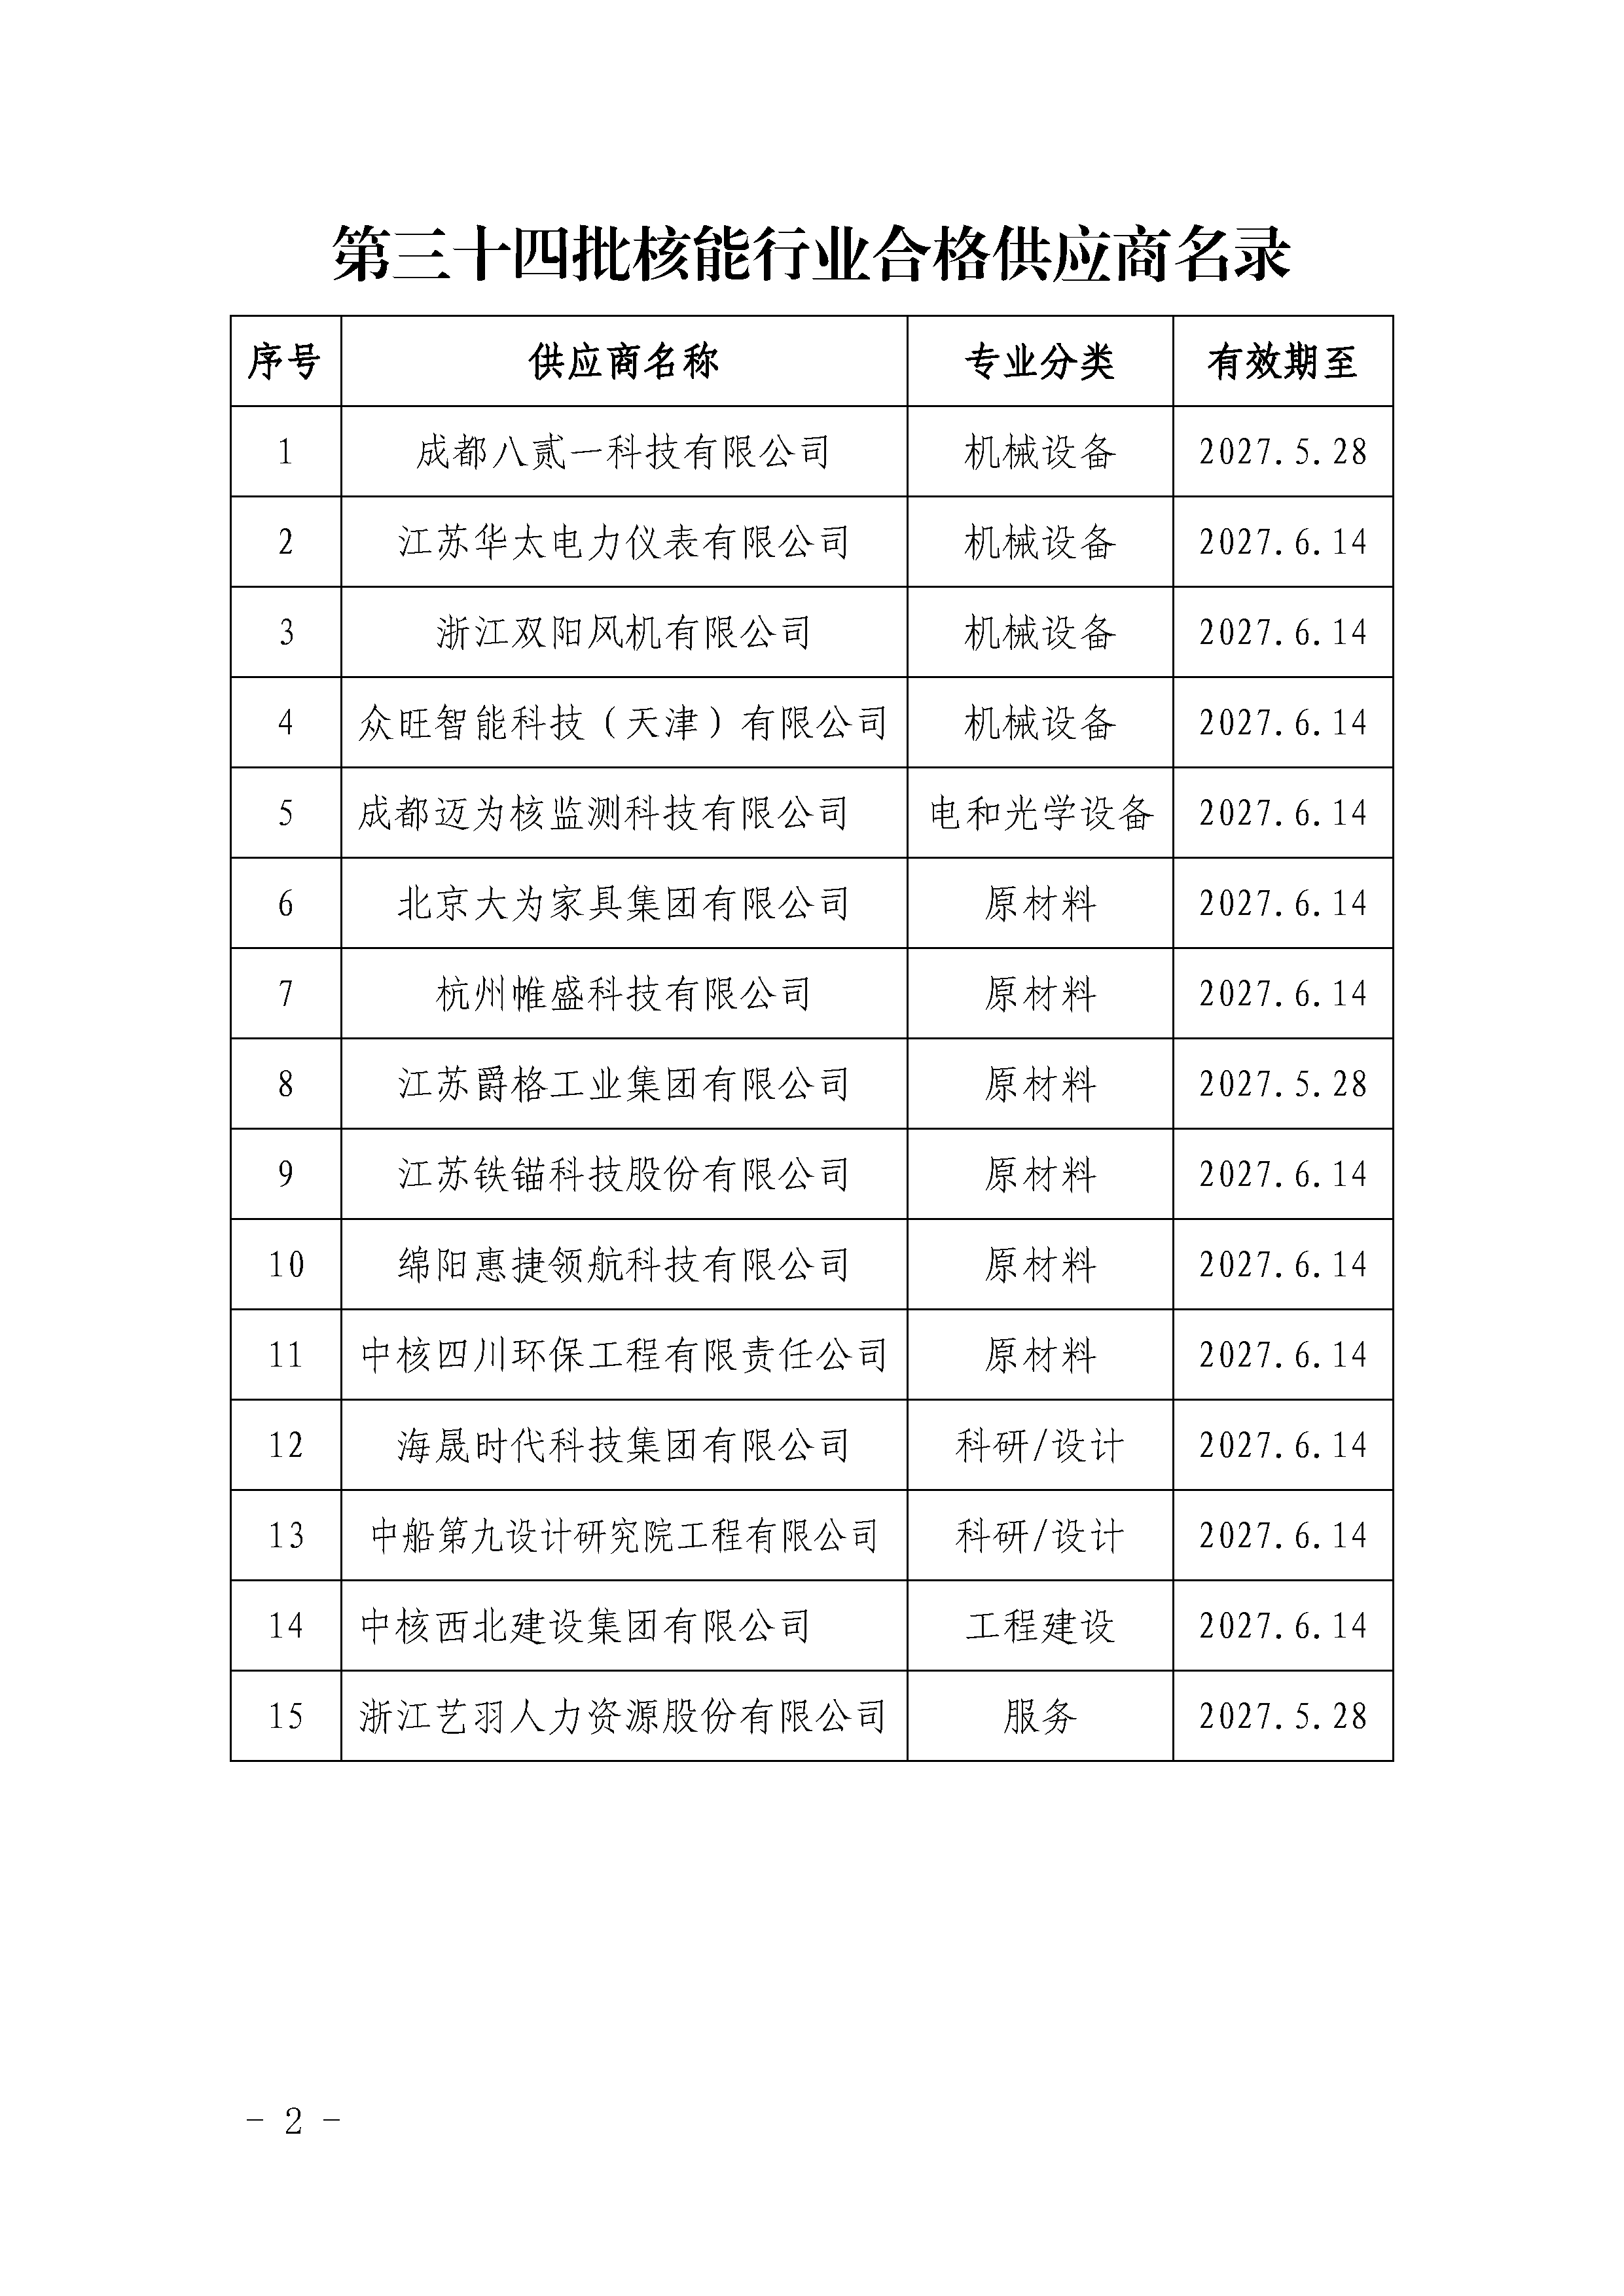 中国核能行业协会关于发布第三十四批核能行业合格供应商名录的公告_页面_2.png